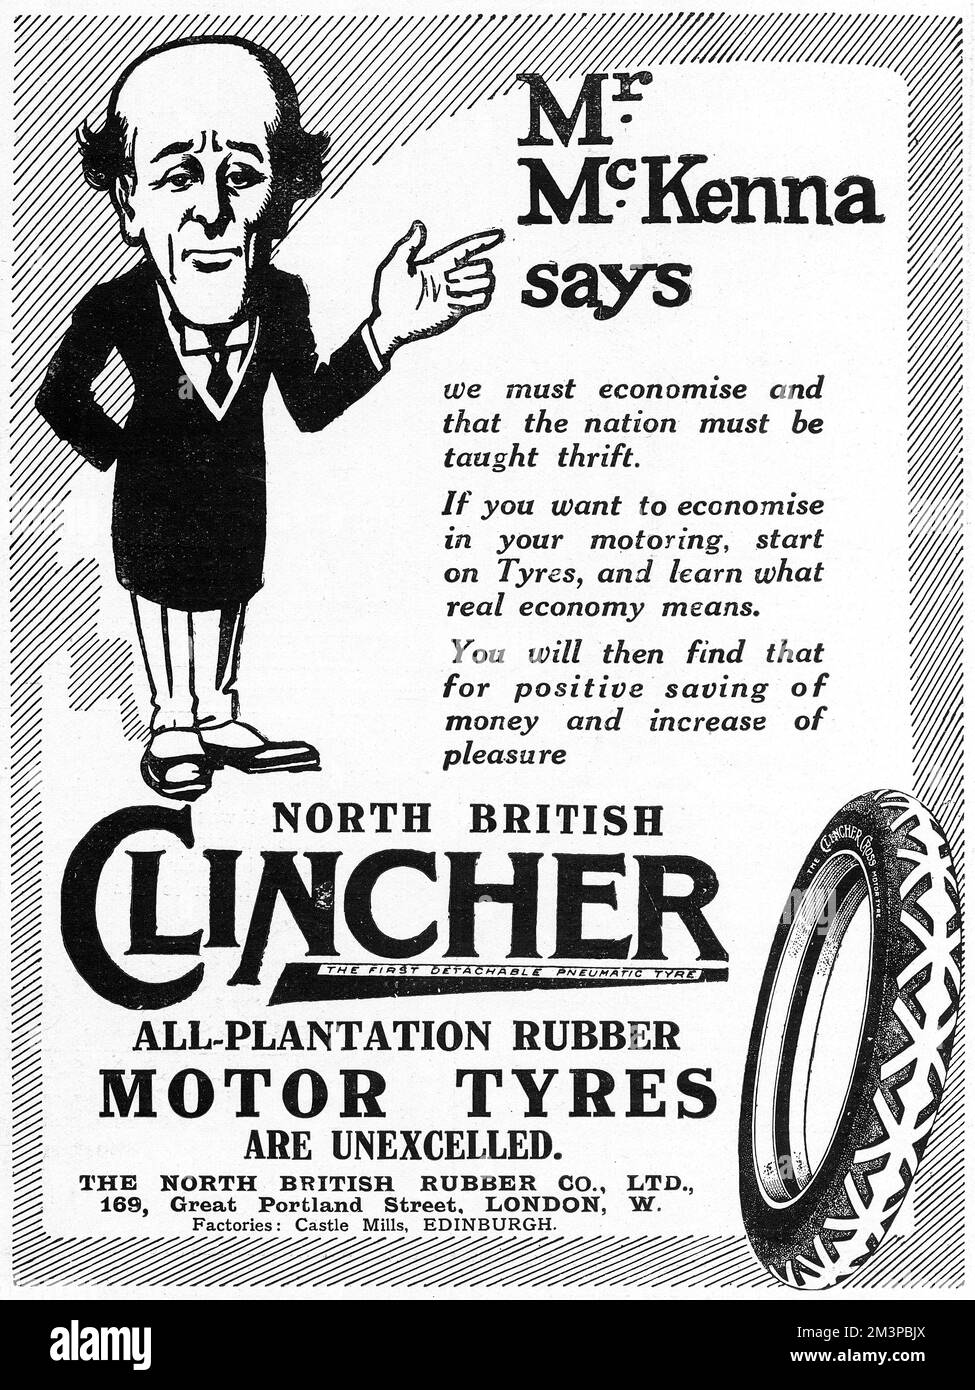 Werbung für Clincher Tyres während des Ersten Weltkriegs mit einer Karikatur des Finanzkanzlers Reginald McKenna, der sagt: "Wir müssen sparsam sein und der Nation muss Sparsamkeit beigebracht werden." Natürlich sollte Clincher Tyres in jede Sparmaßnahme einbezogen werden! Datum: 1916 Stockfoto